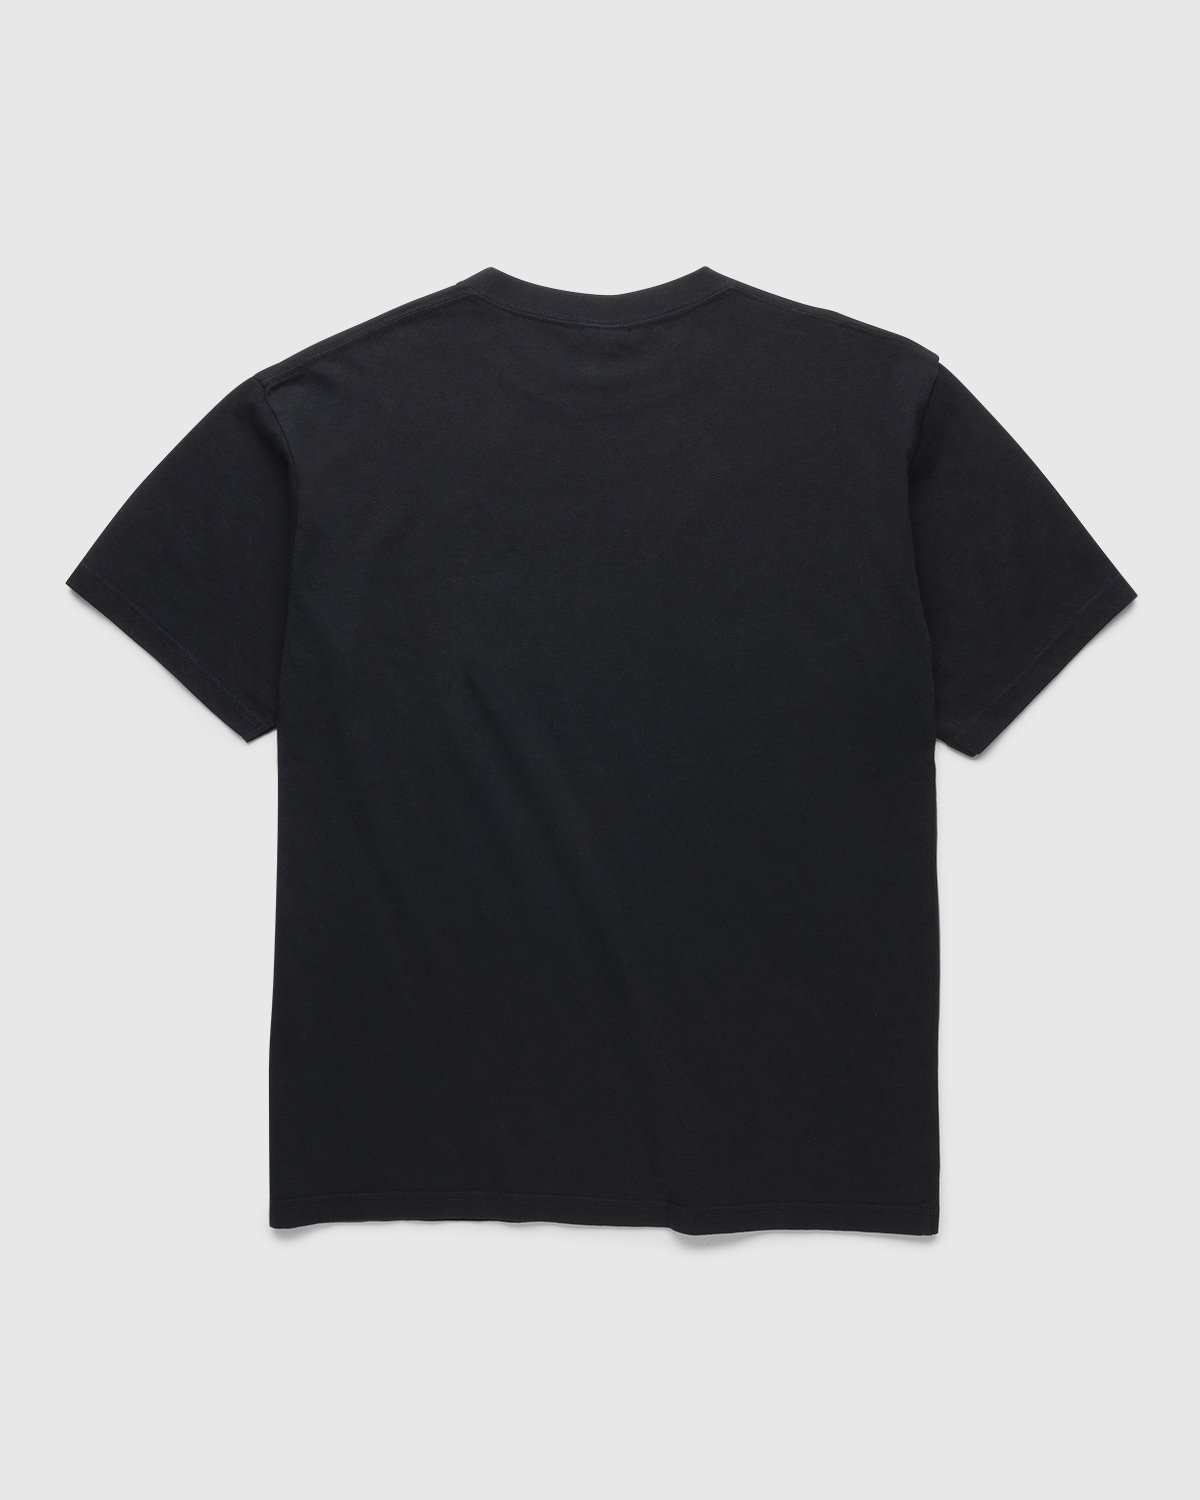 BRAUN x Highsnobiety – TP1 T-Shirt Black | Highsnobiety Shop